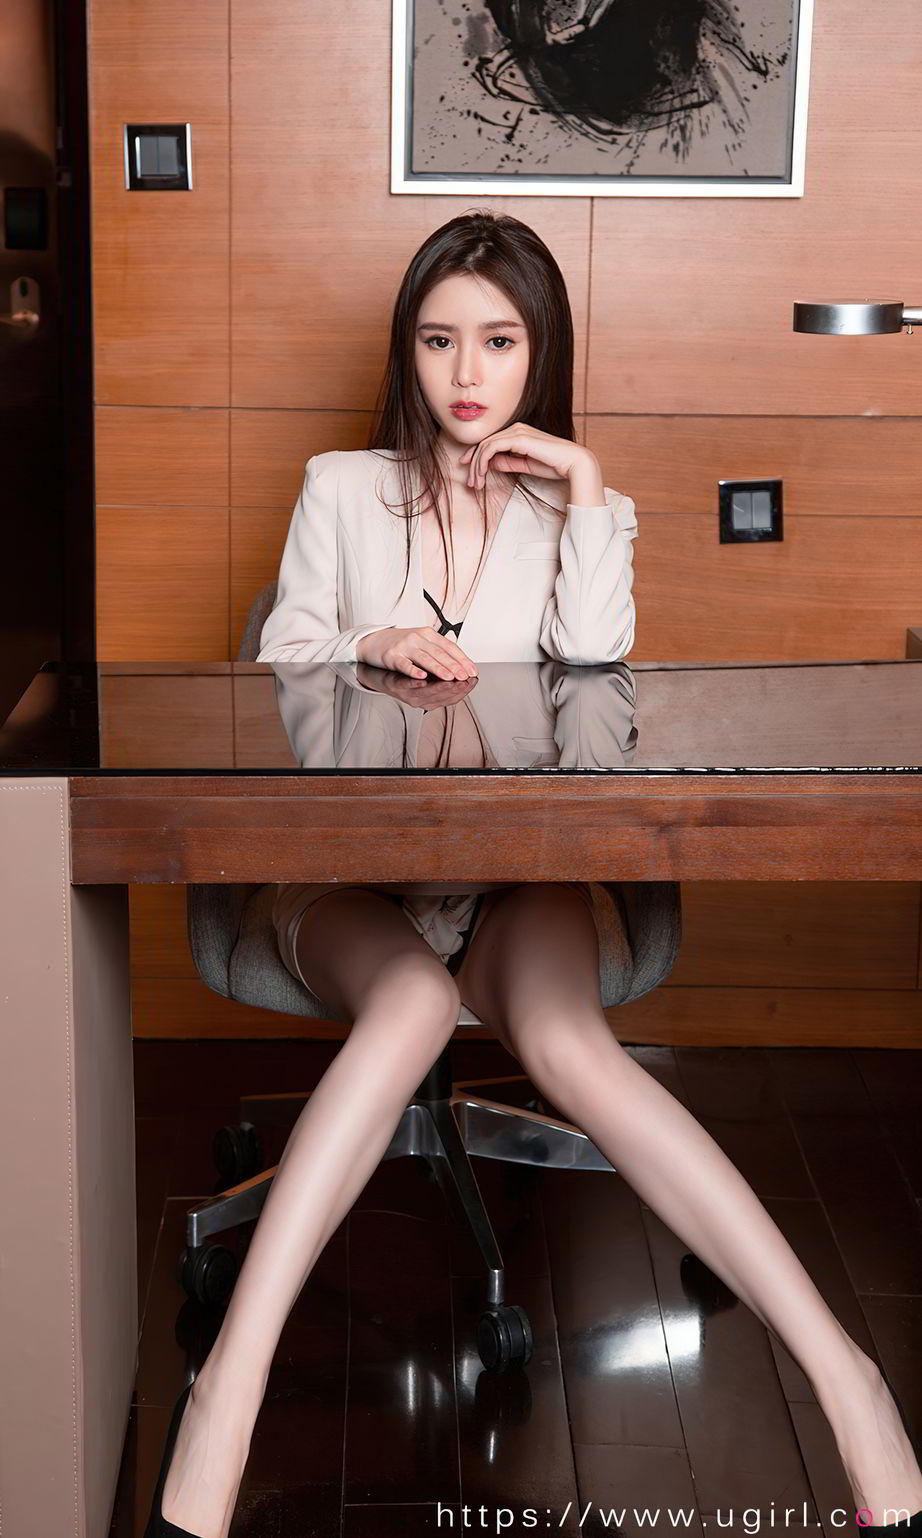 美女模特吴雪瑶职场御姐修长美腿情趣内衣系列写真